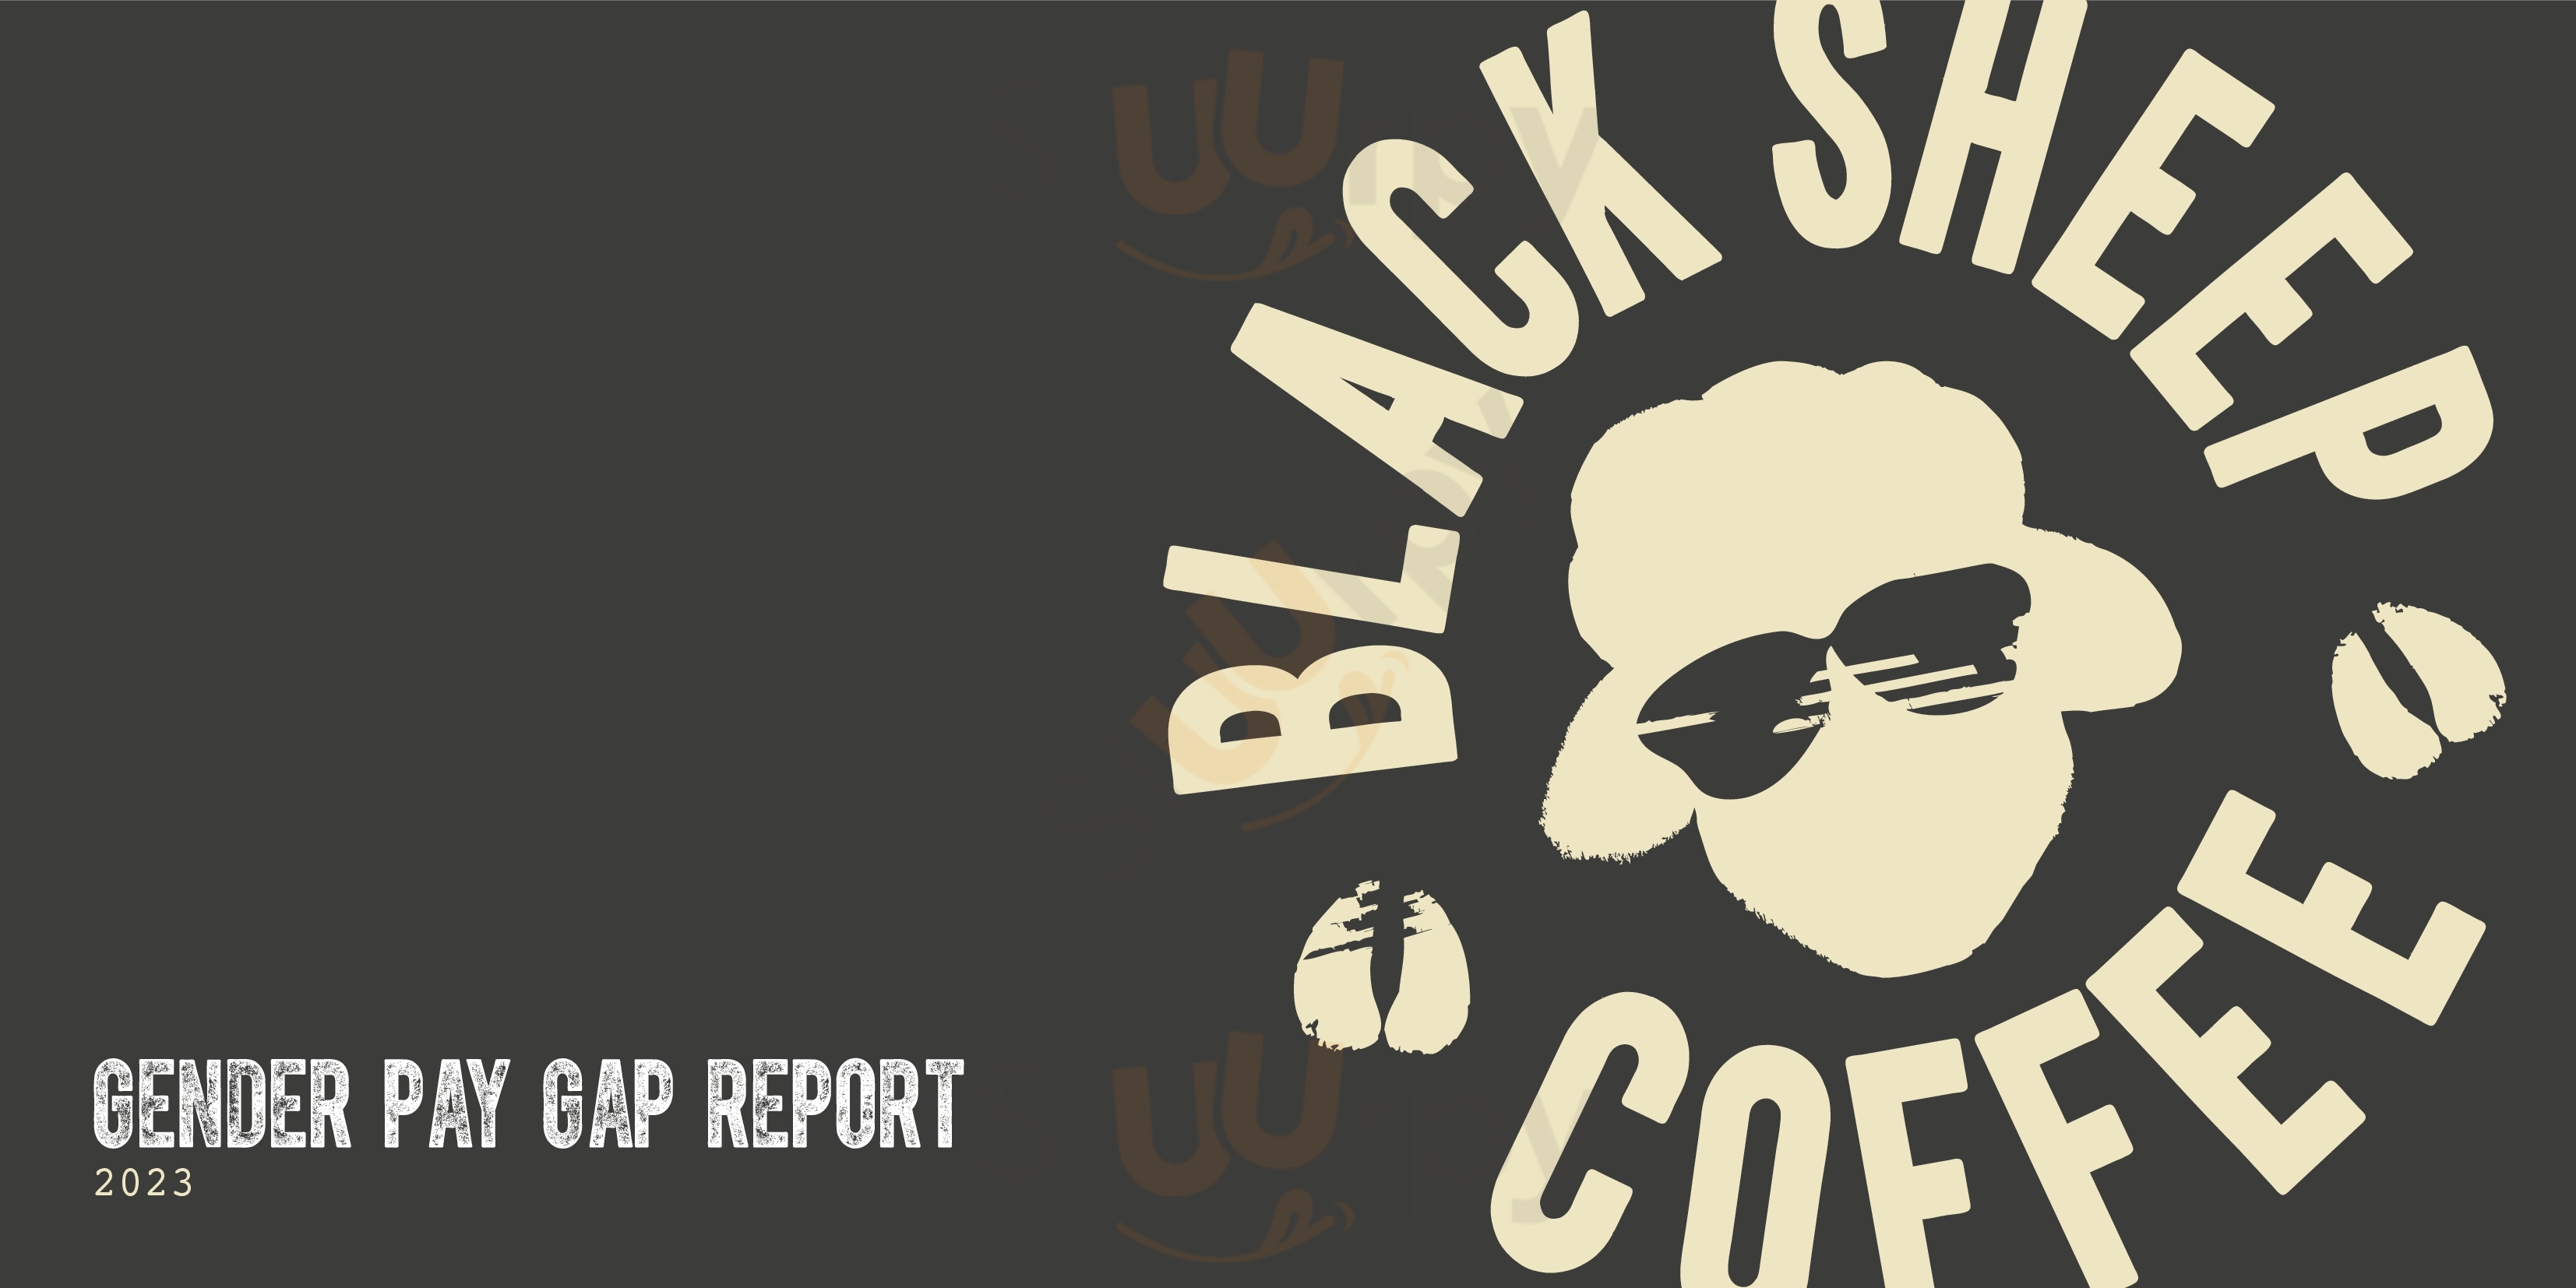 Black Sheep Coffee Glasgow Menu - 1